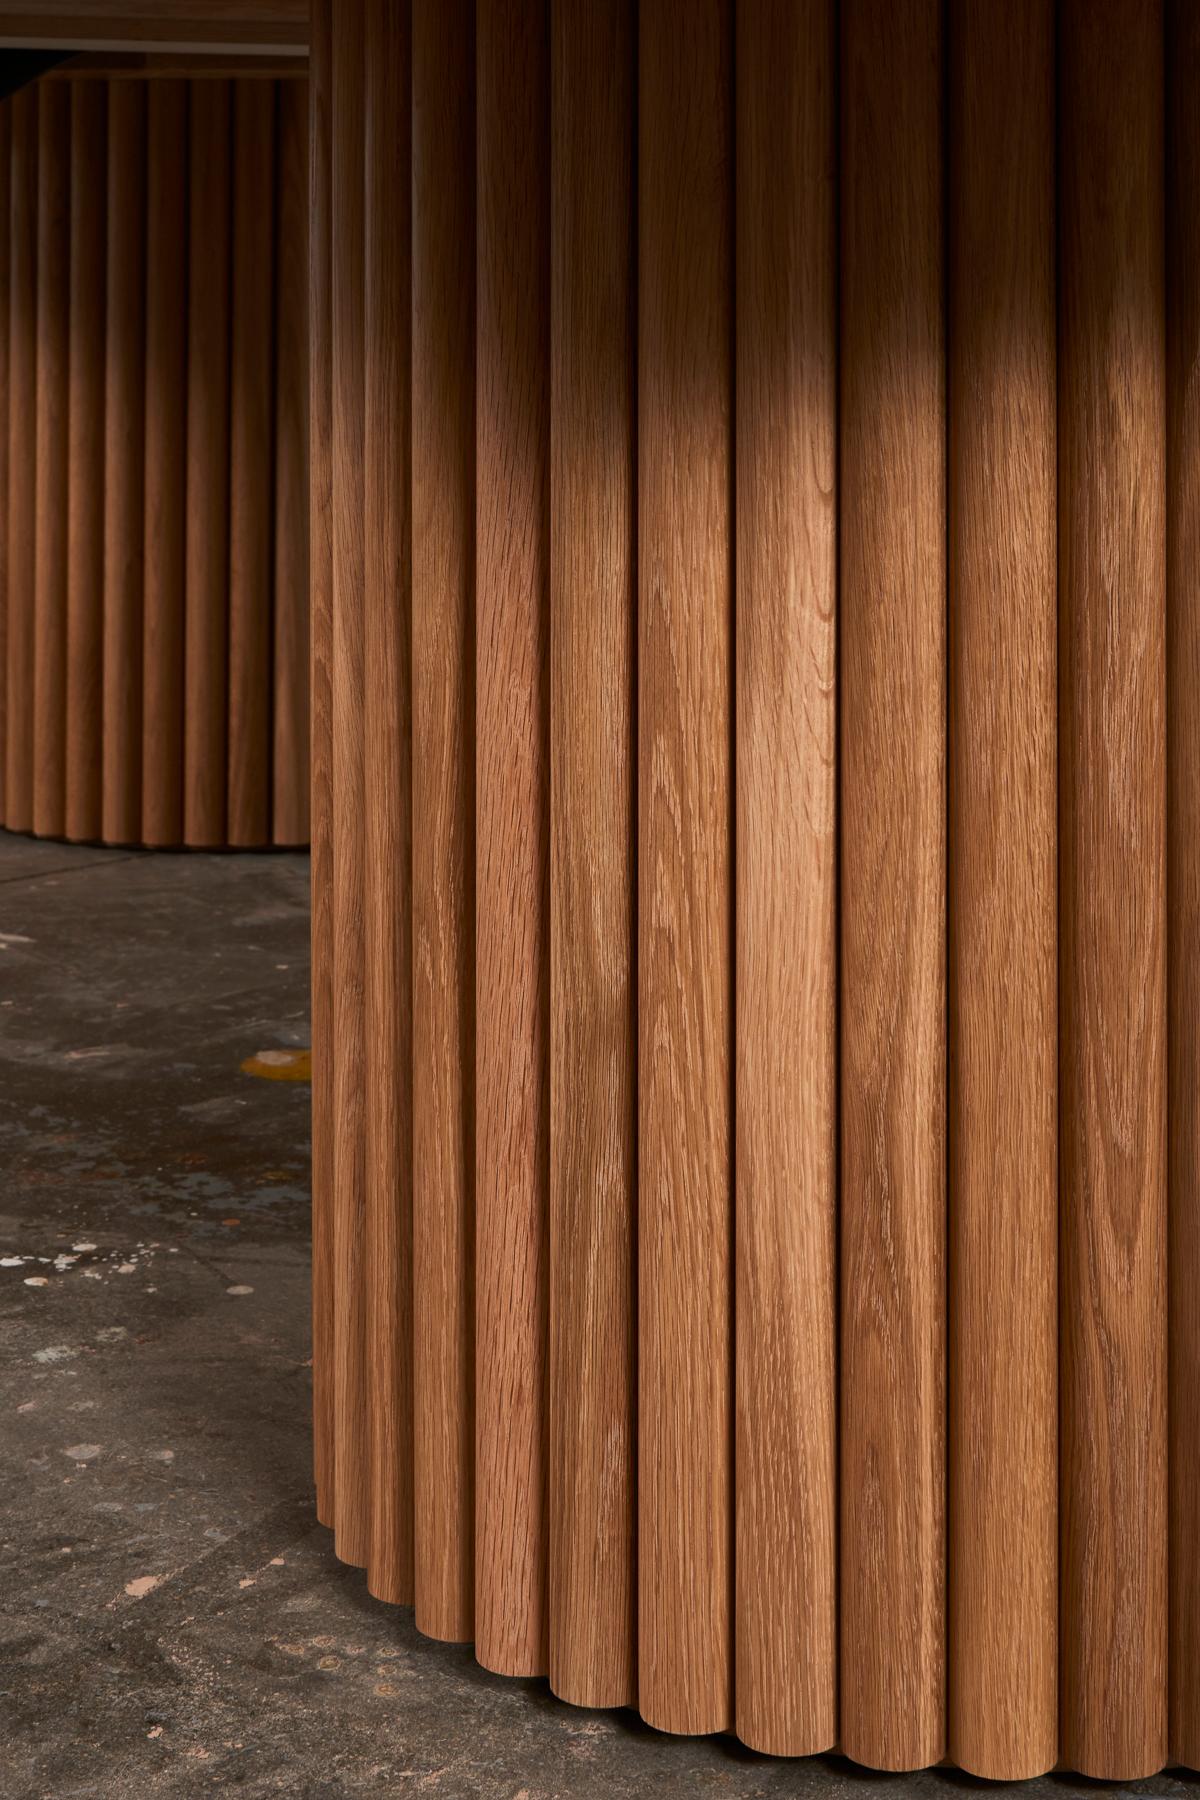 D'une audace inouïe, la table à manger de Kate Duncan est une pièce qui rend hommage à la fois à l'esthétique contemporaine et à l'architecture brutaliste. De grandes colonnes de cannelures cooptées et un plateau en bois massif massif créent une